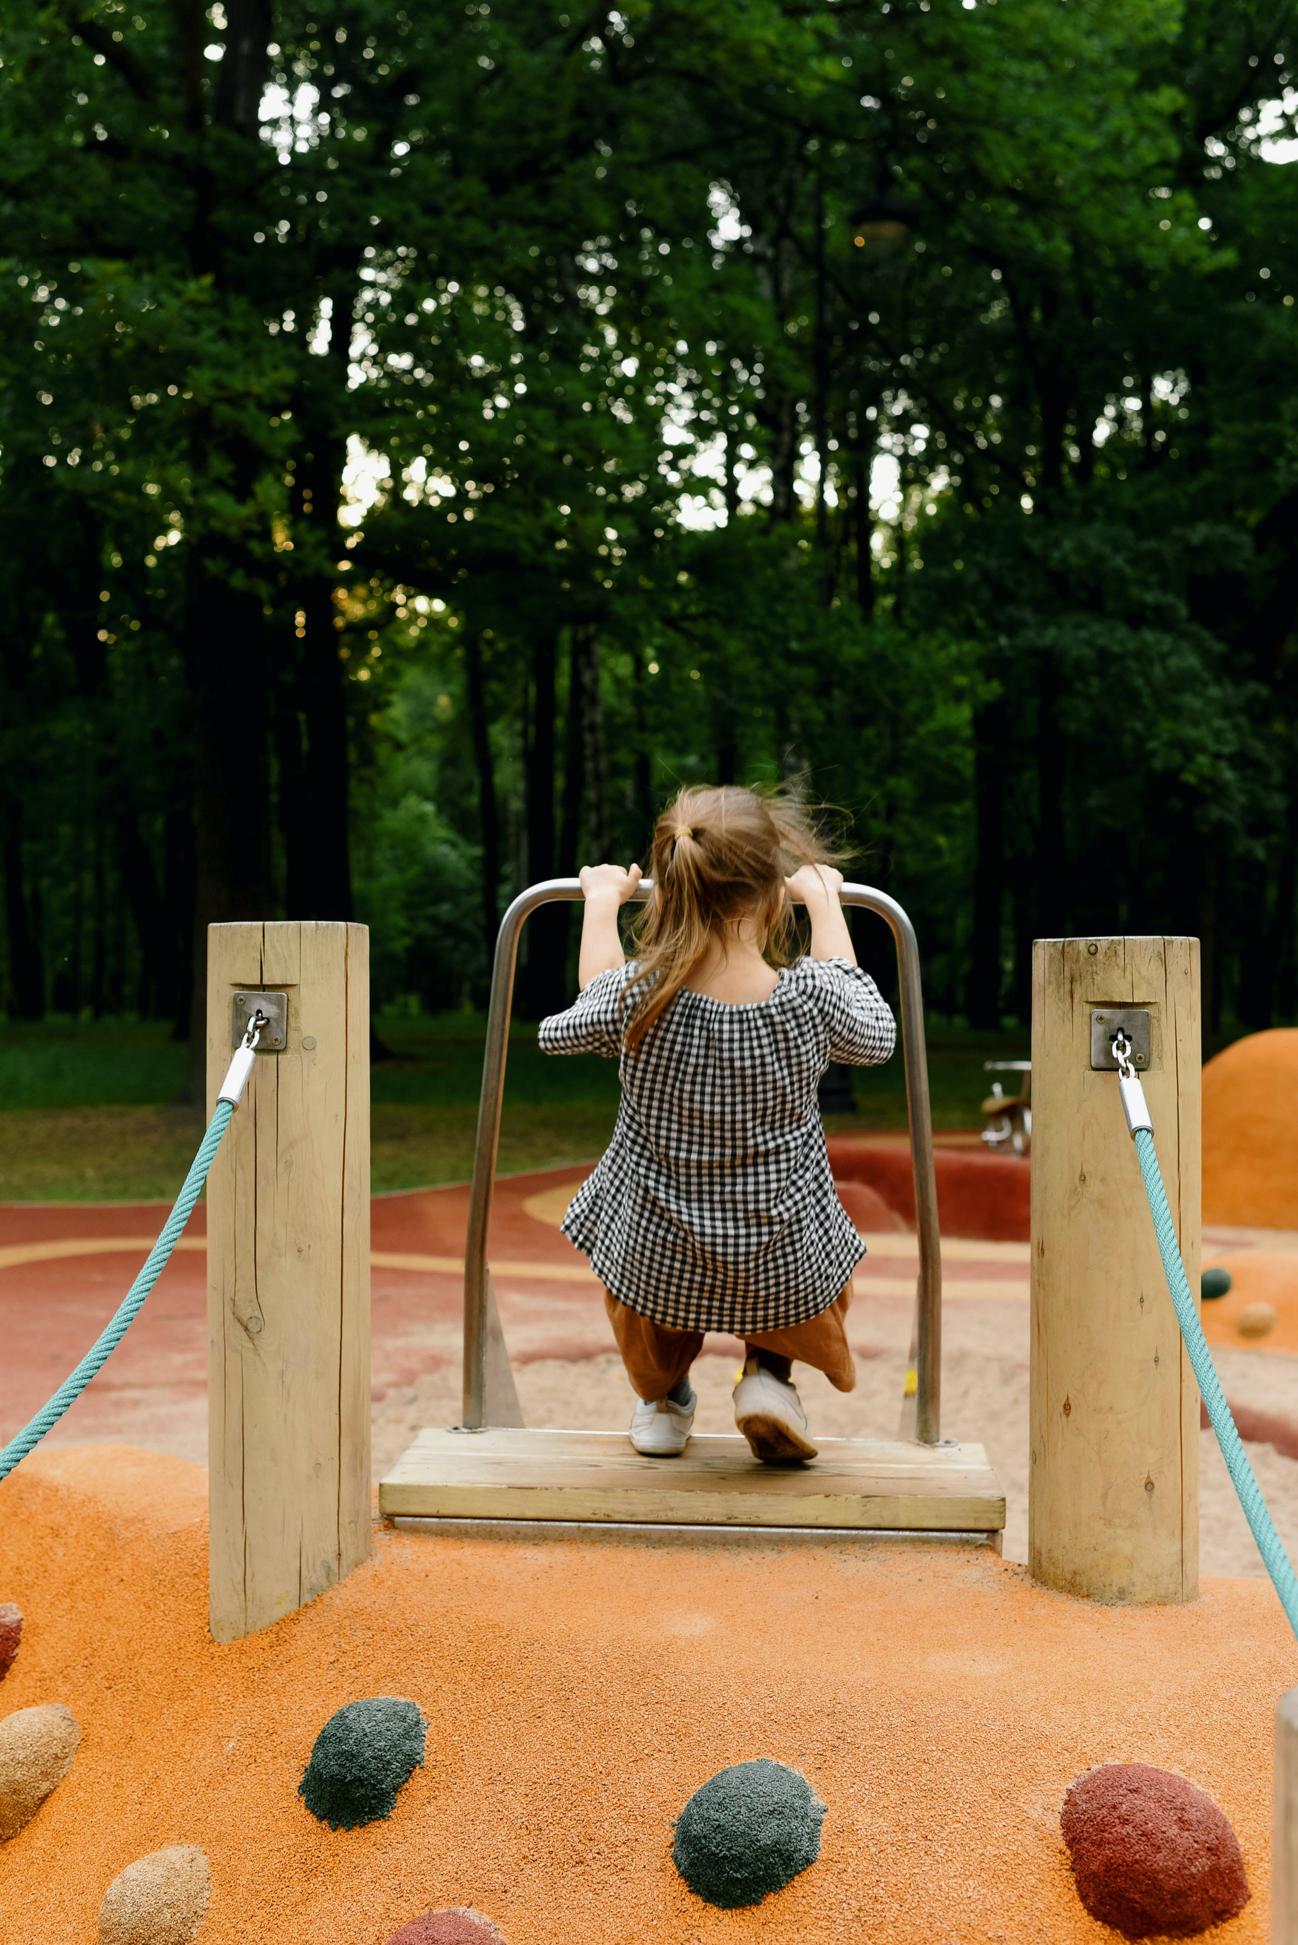 Parchi e aree gioco a roma: divertimento all'aria aperta per bambini